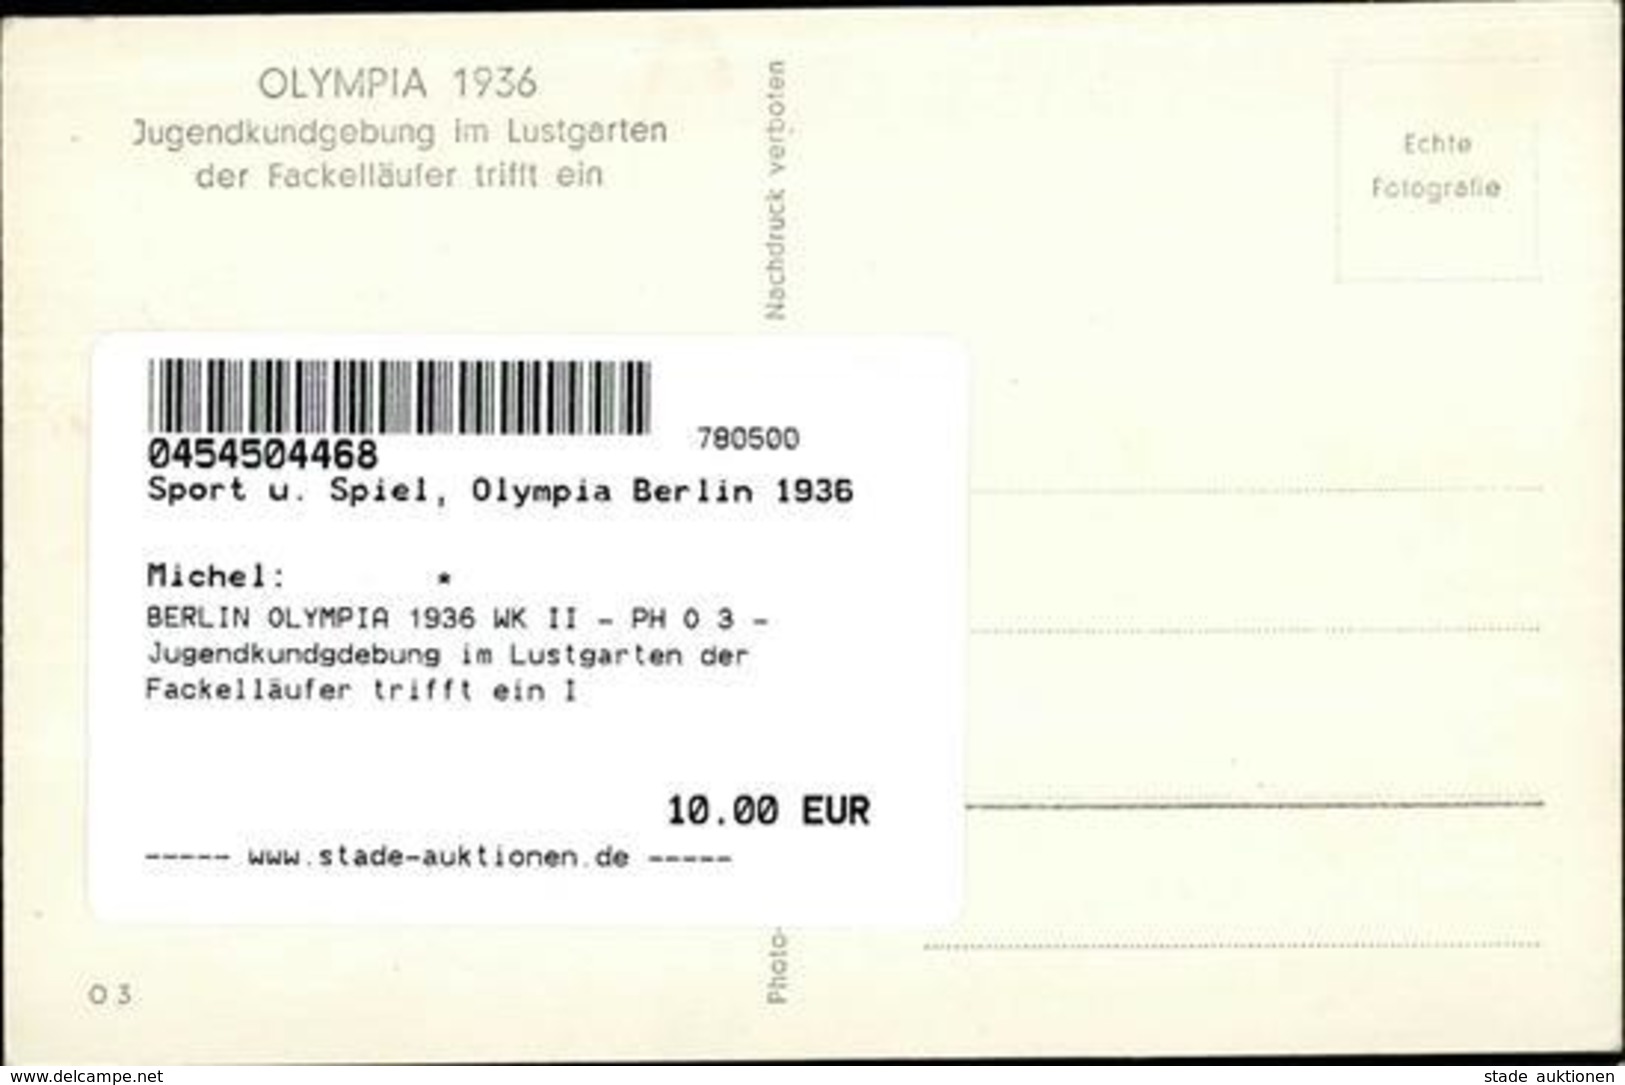 BERLIN OLYMPIA 1936 WK II - PH O 3 - Jugendkundgdebung Im Lustgarten Der Fackelläufer Trifft Ein I - Olympische Spiele